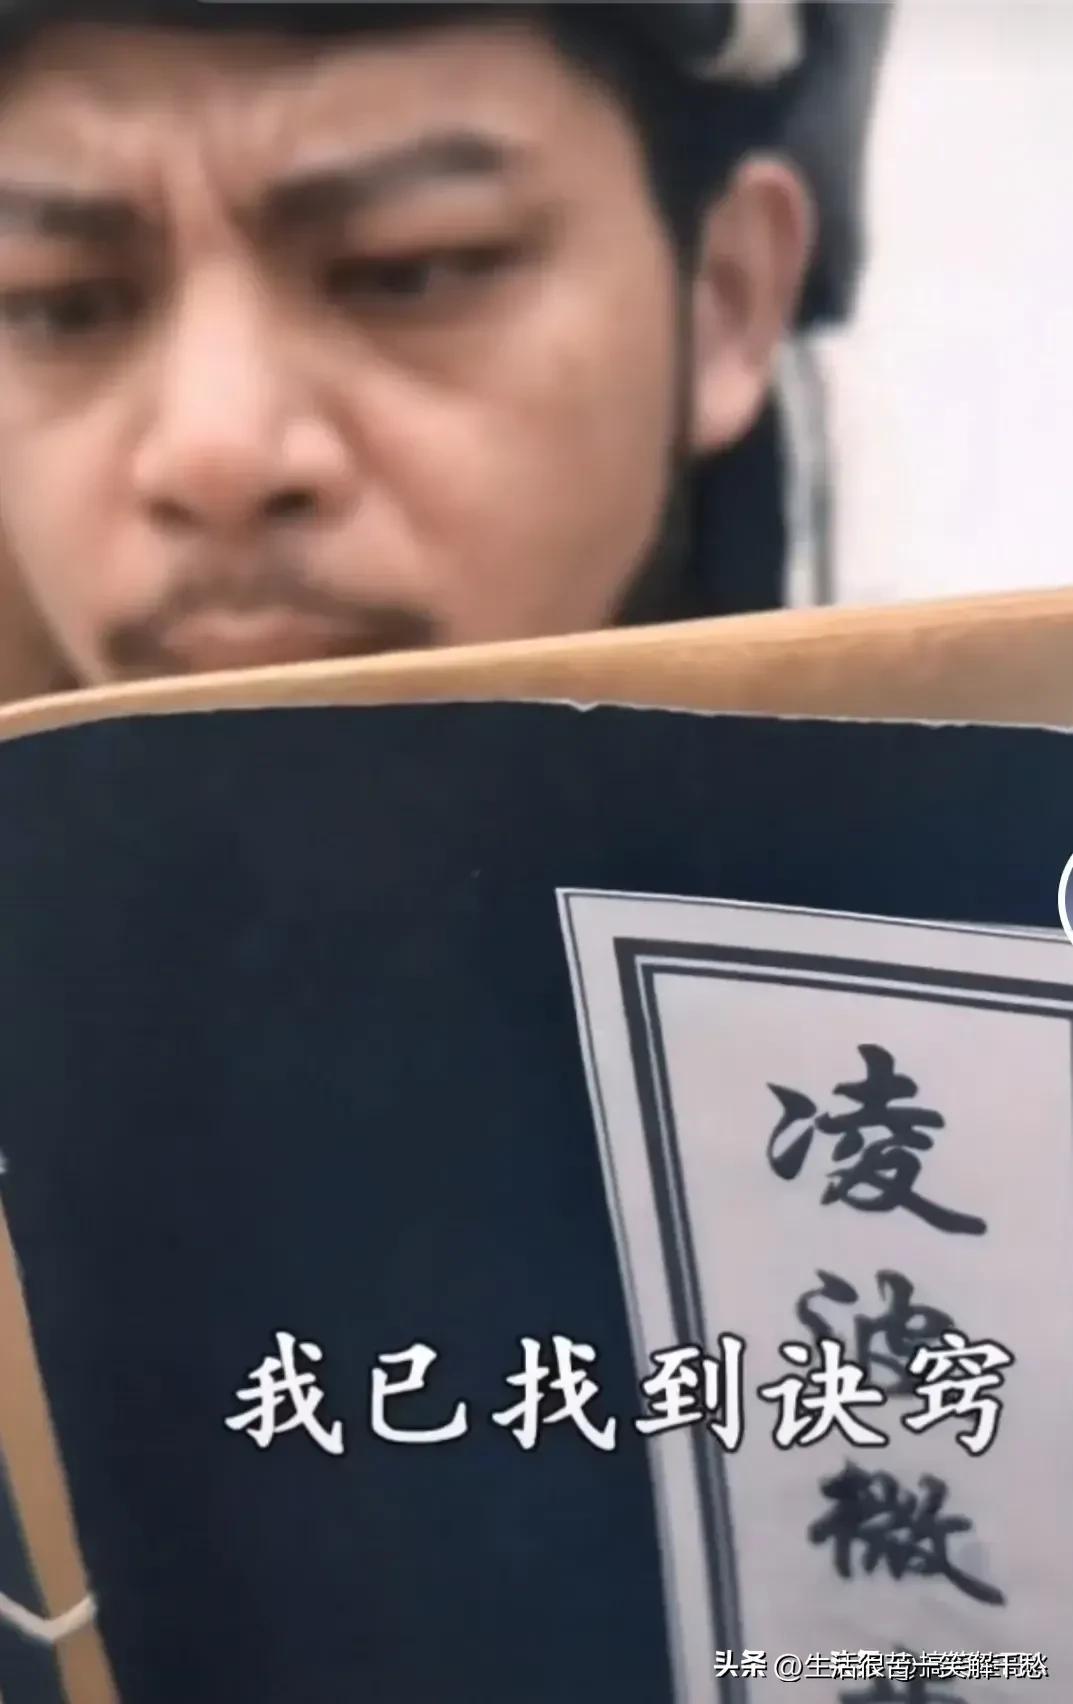 广西乔峰喊话导演翻拍《天龙》,为致敬经典,片酬只要20万